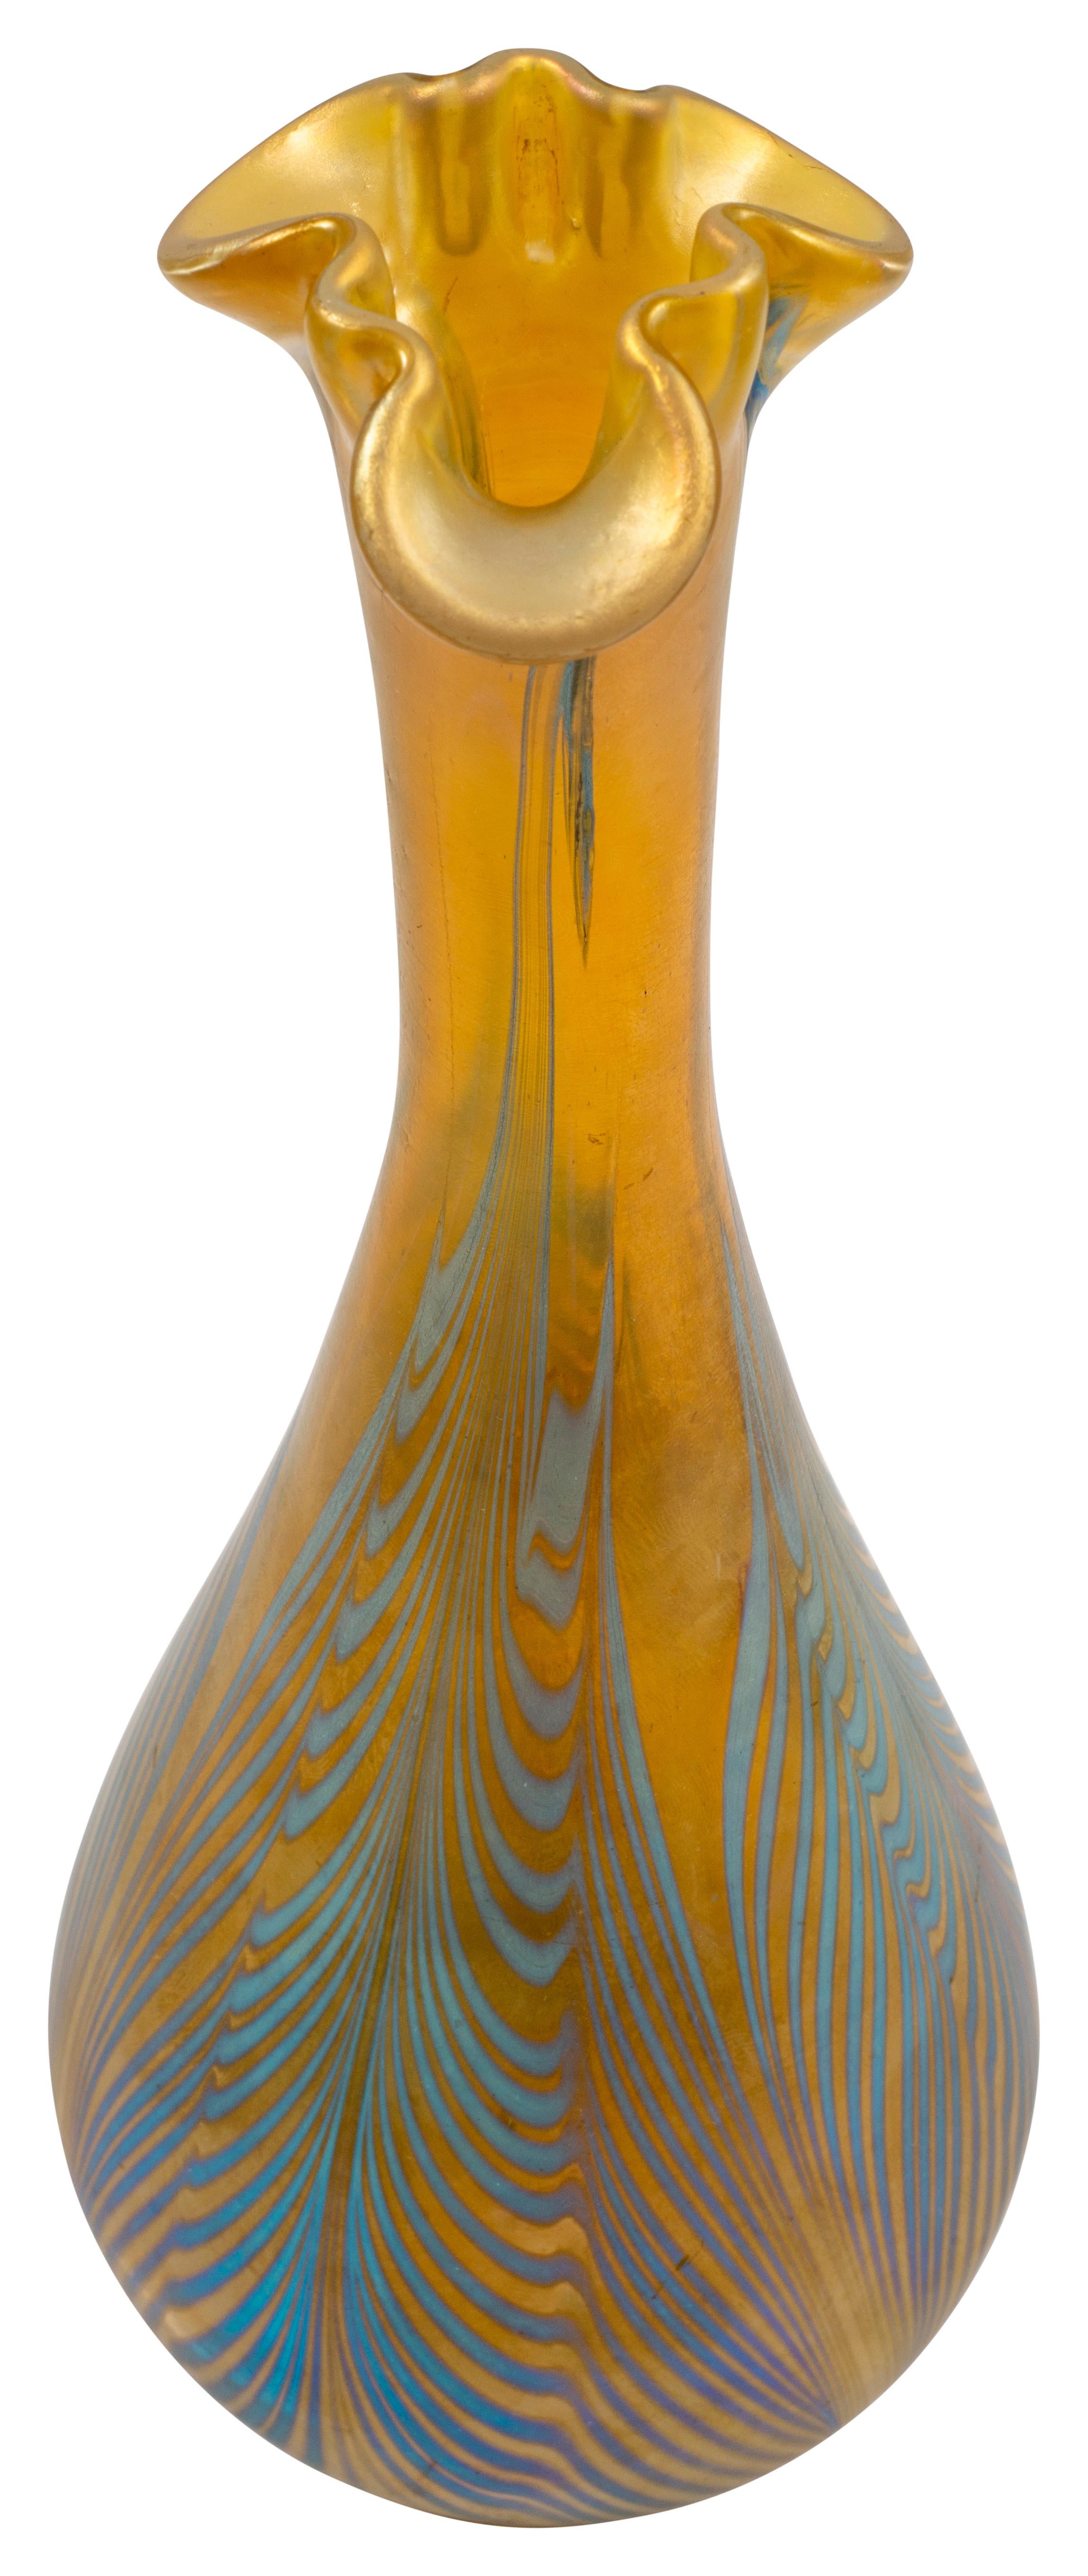 Art Nouveau Vase Austrian Jugendstil Loetz Mouth-Blown Glass circa 1901 Blue Yellow For Sale